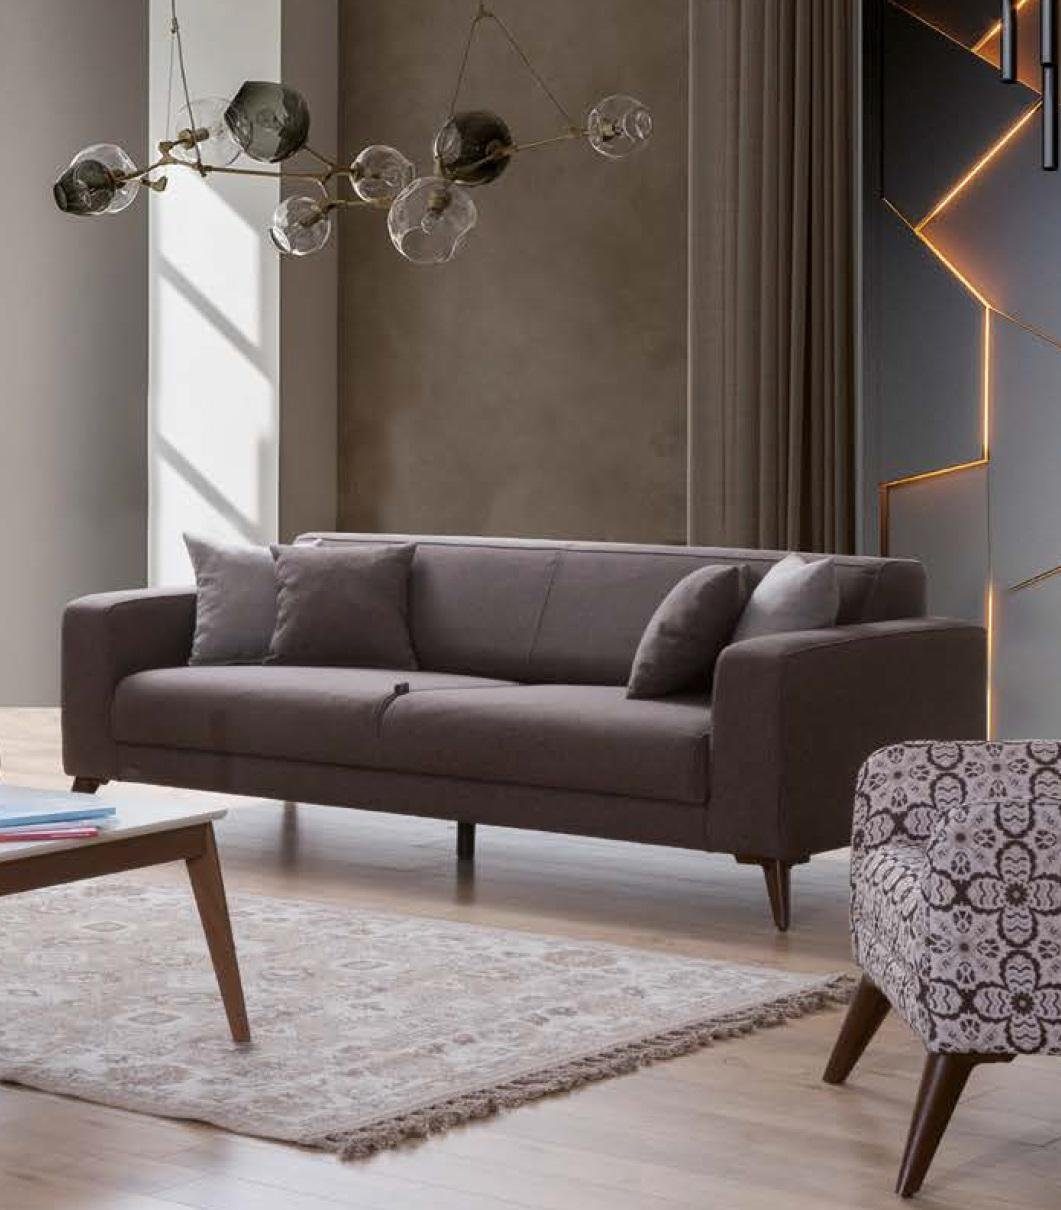 JVmoebel Sofa Dreisitzer Luxus Sofa 3 Sitzer Sofas Sitz Stoff Design Couch Textil